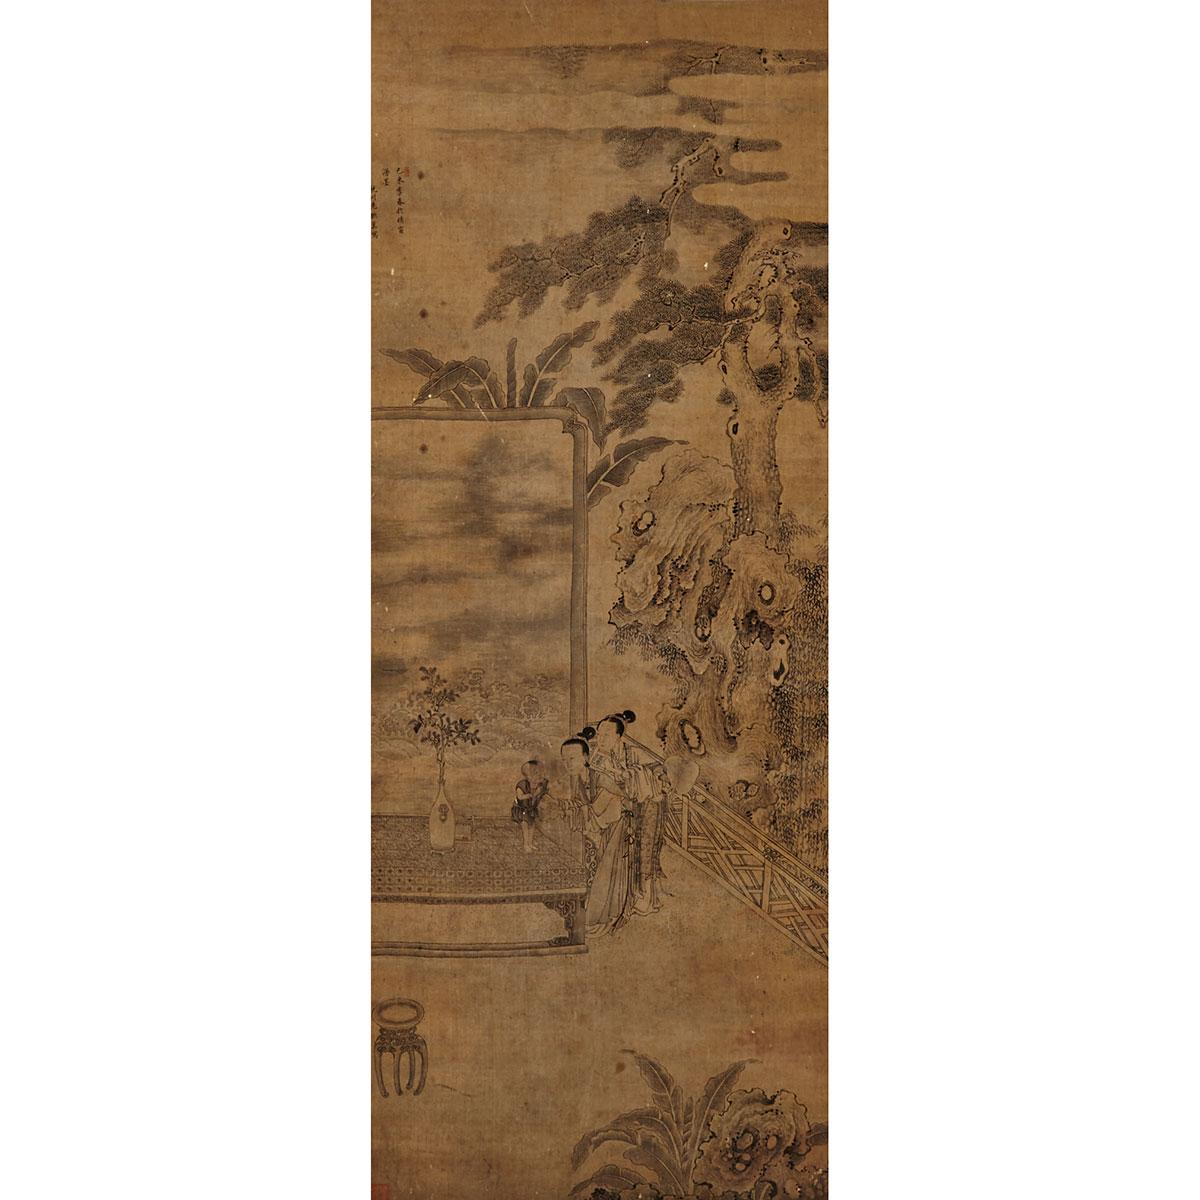 Wei Lianji (Qing dynasty)